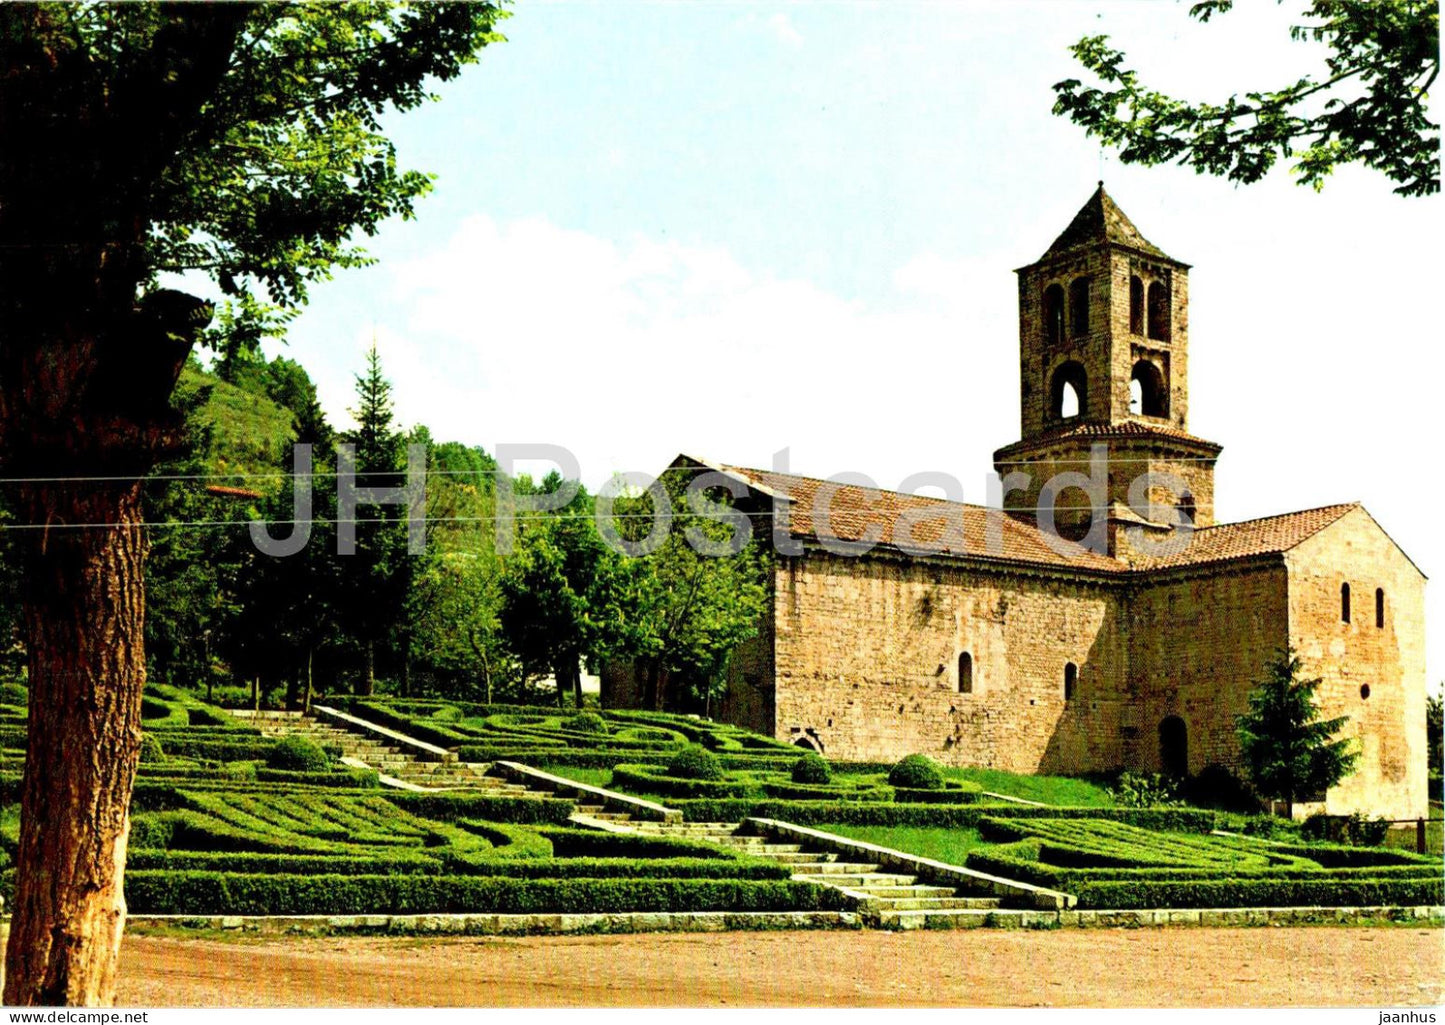 Camprodon - Monasterio de San Pedro - The San Pedro Monastery - 2079 - Spain - unused - JH Postcards